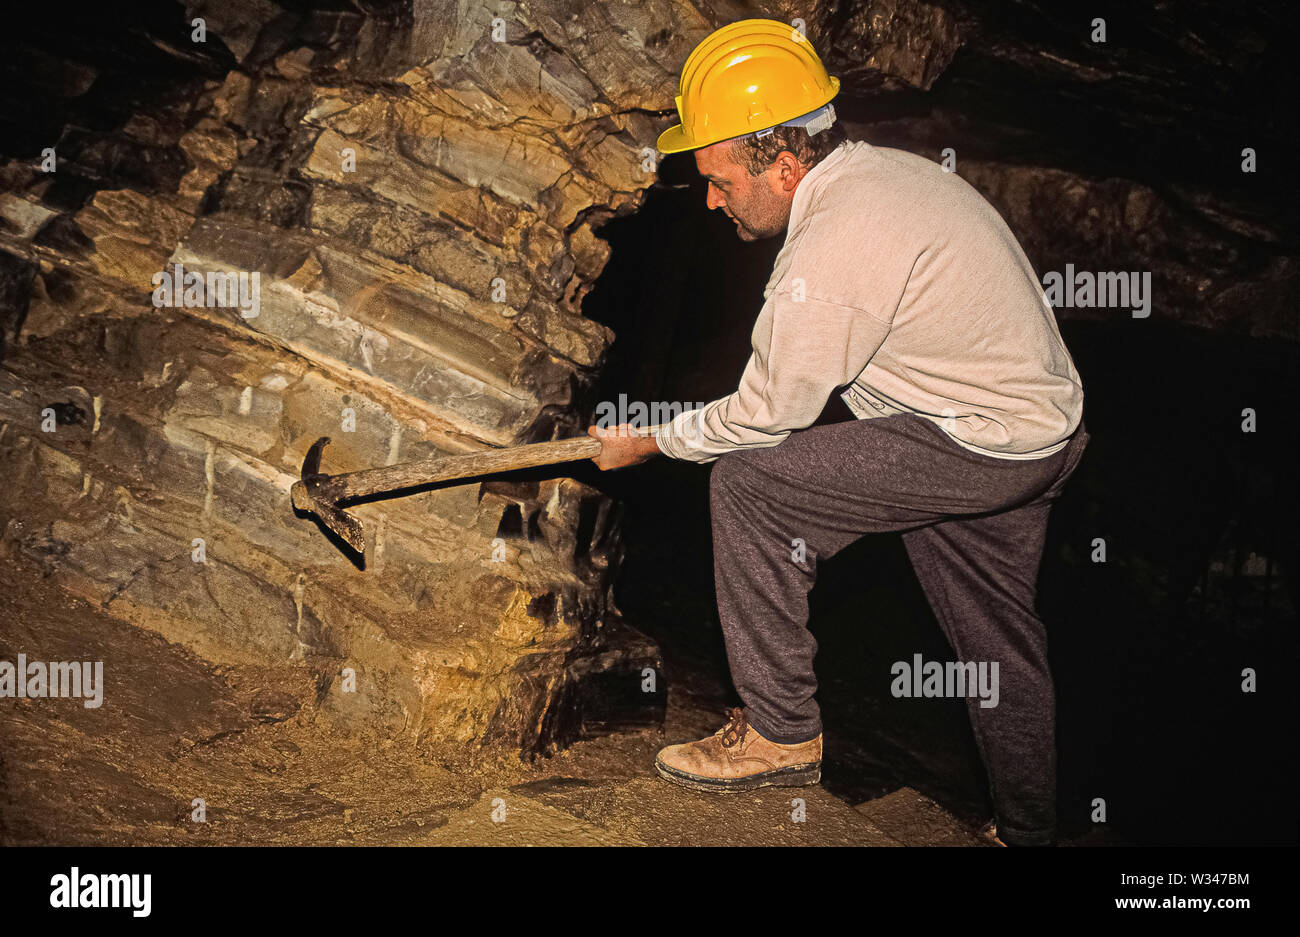 Italie Vénétie Bolca - carrière - la Pesciara Pesciara domaine se compose d'une parcelle des couches calcaires d'environ 19 mètres d'épaisseur et d'extension limitée (quelques centaines de m2). Les fossiles, principalement représentés par les poissons et les plantes, sont trouvés dans les cinq niveaux qui se chevauchent, composé de très stratifiée, calcaire à grain très fin, en alternance avec des couches de débris calcaires dans lesquelles il n'y a que des restes d'invertébrés et, surtout, les coquilles de bivalves et gastéropodes. Banque D'Images